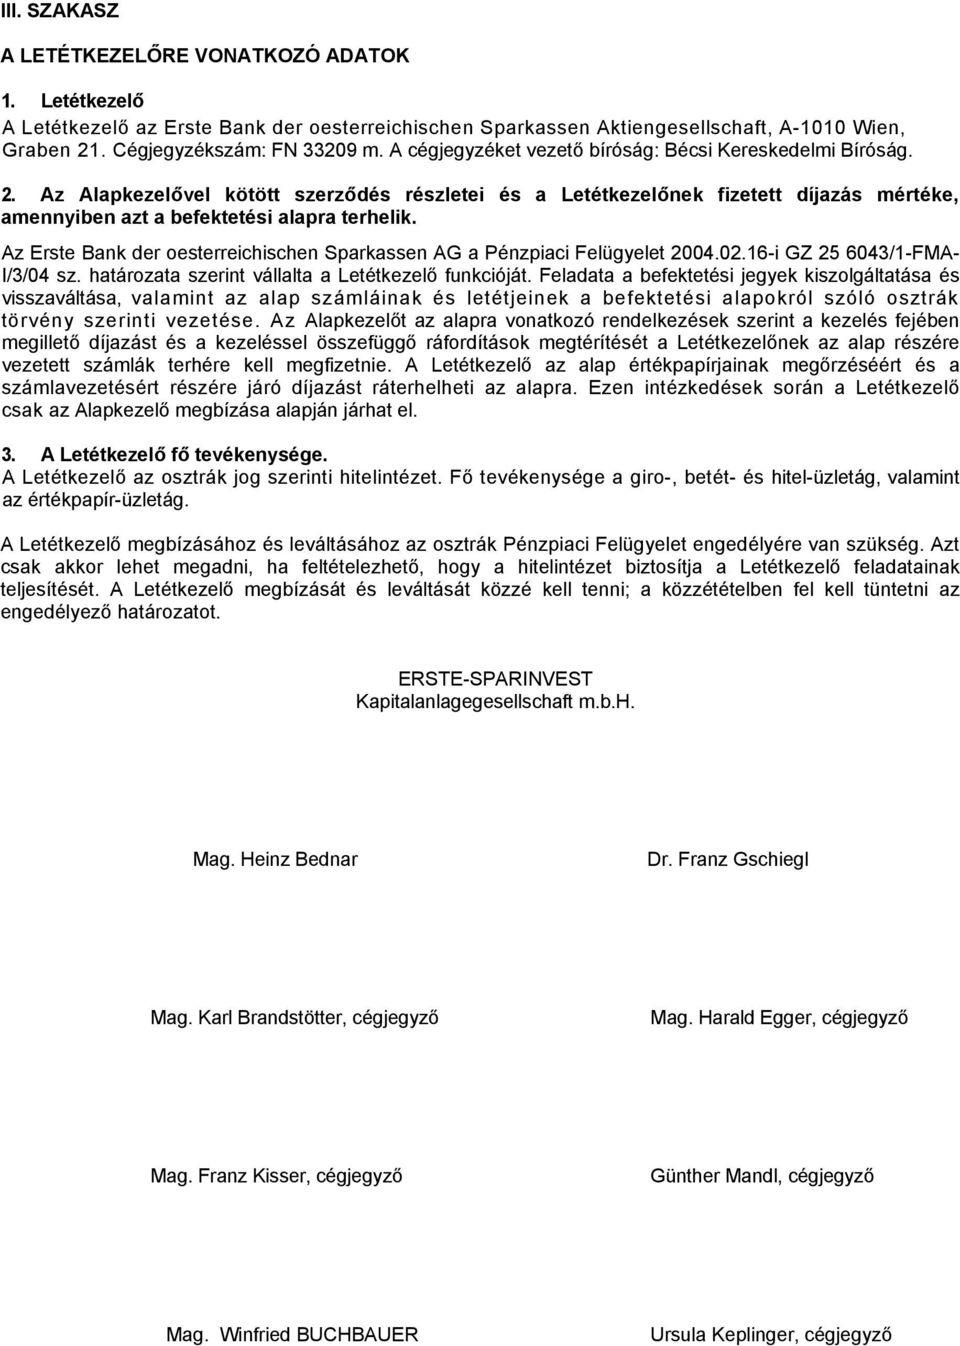 Az Erste Bank der oesterreichischen Sparkassen AG a Pénzpiaci Felügyelet 2004.02.16-i GZ 25 6043/1-FMA- I/3/04 sz. határozata szerint vállalta a Letétkezelő funkcióját.